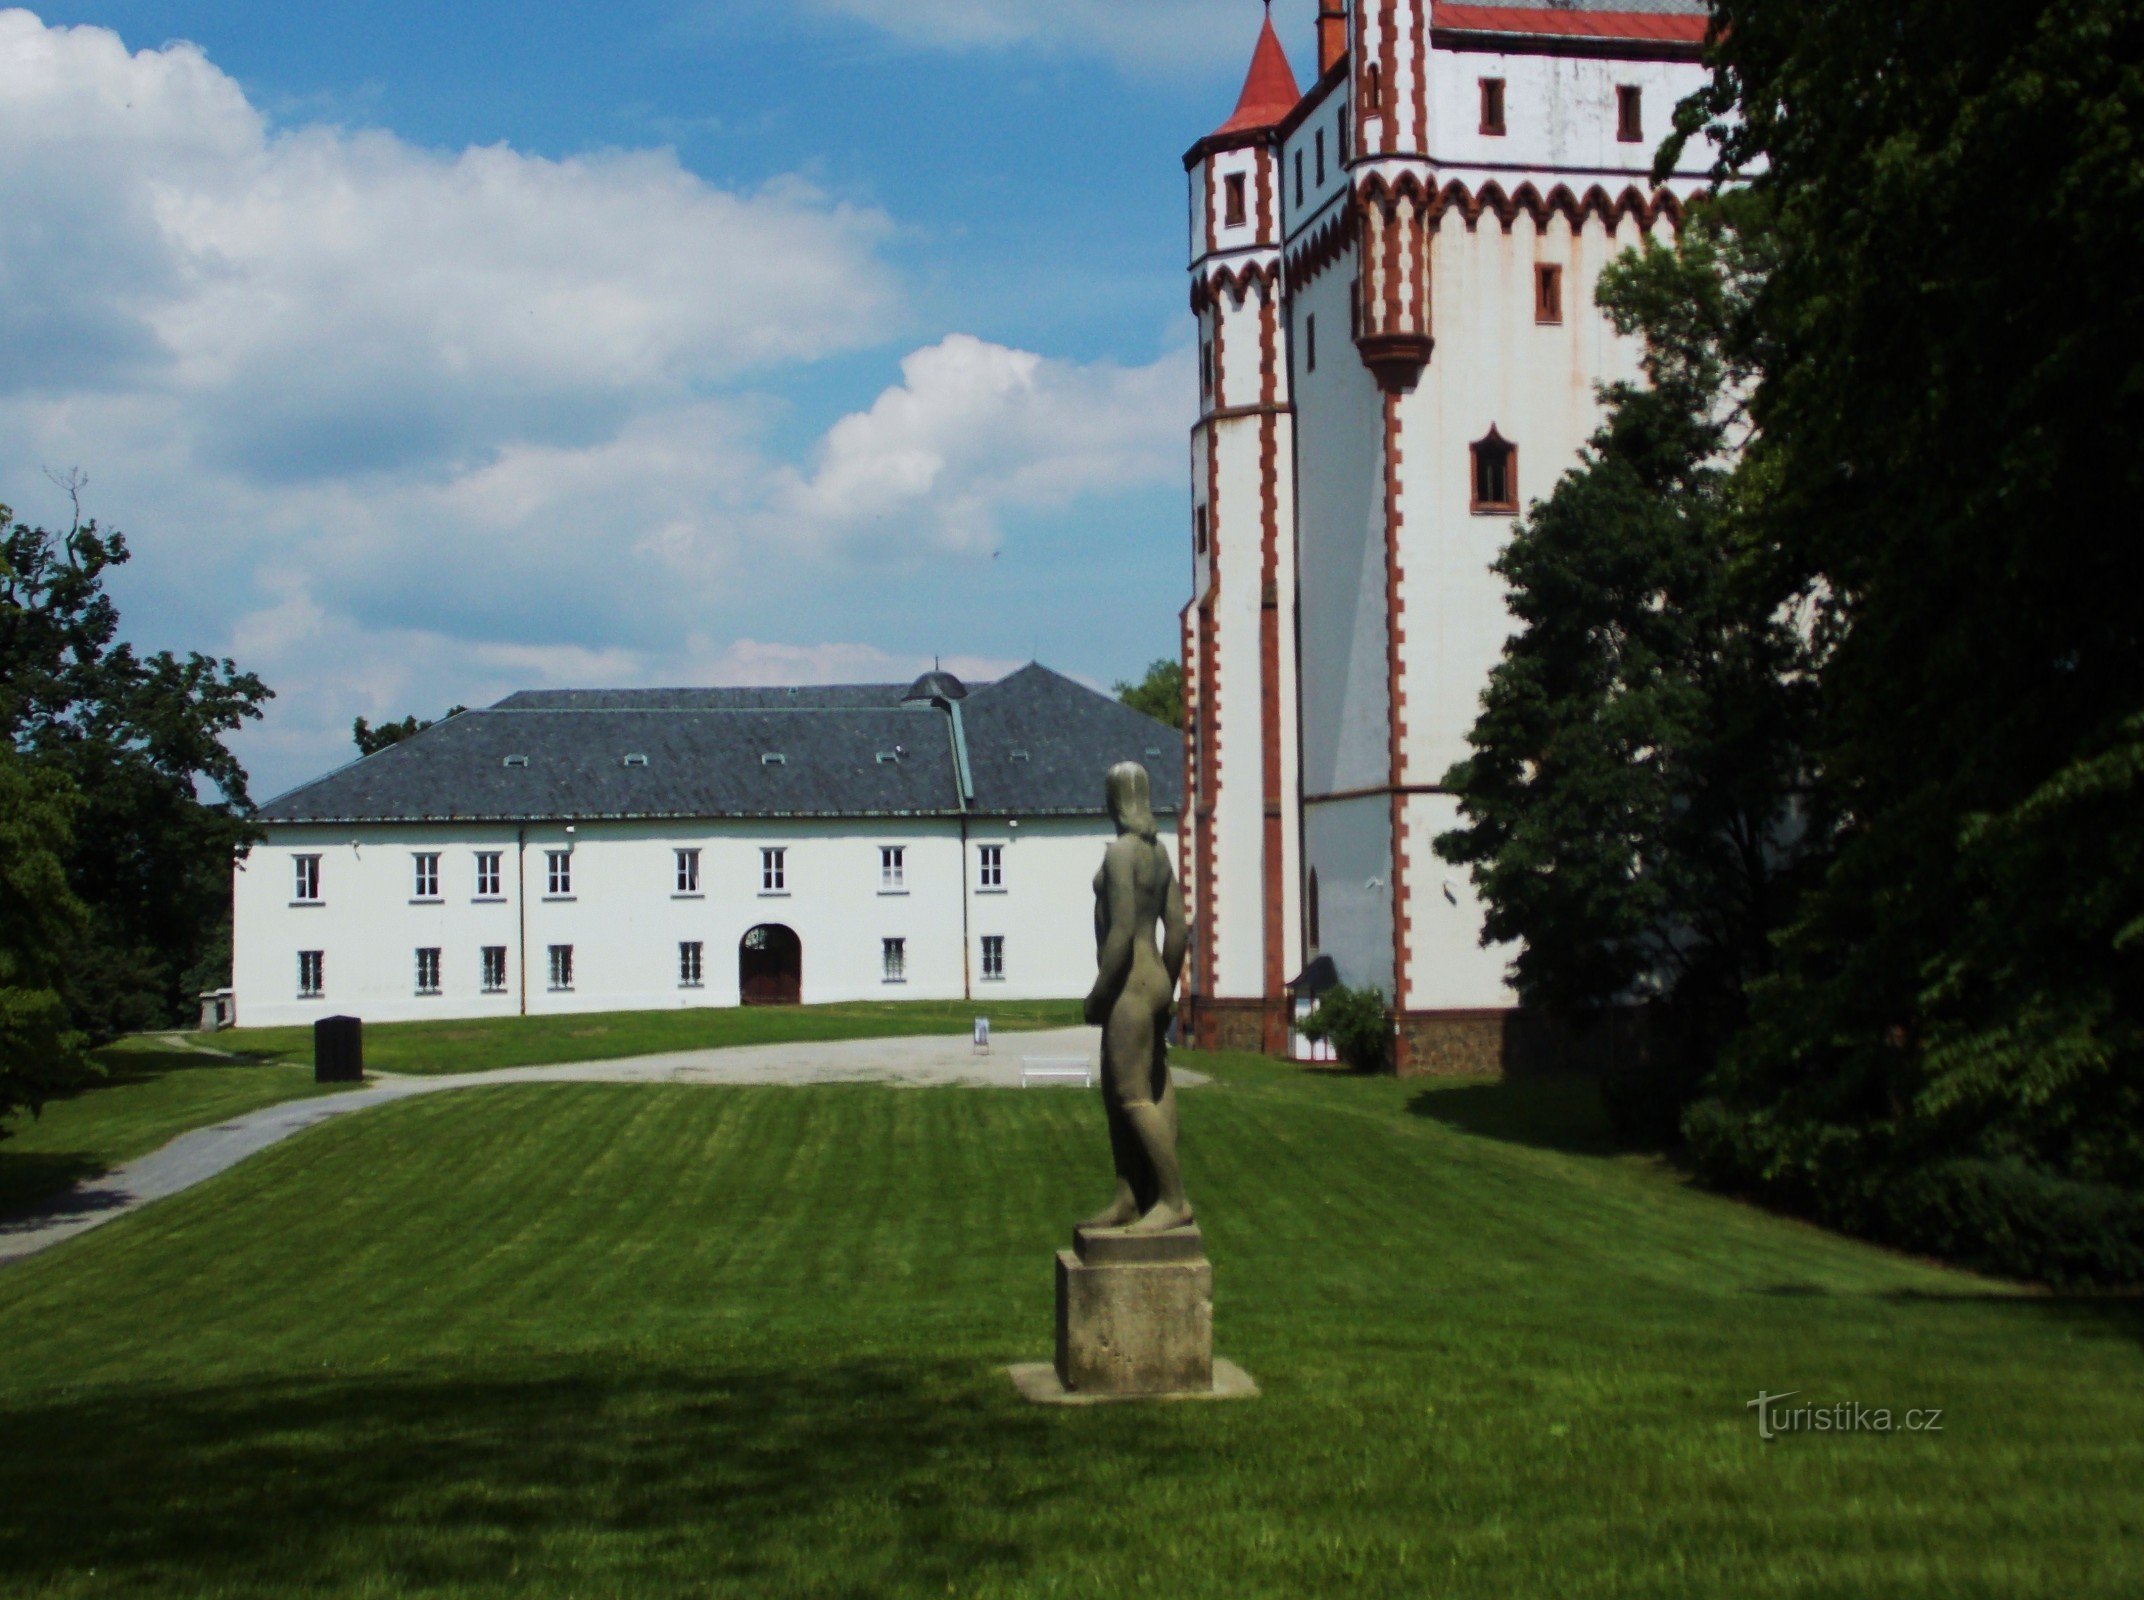 La torre dell'acqua bianca nel parco del castello di Hradec nad Moravicí